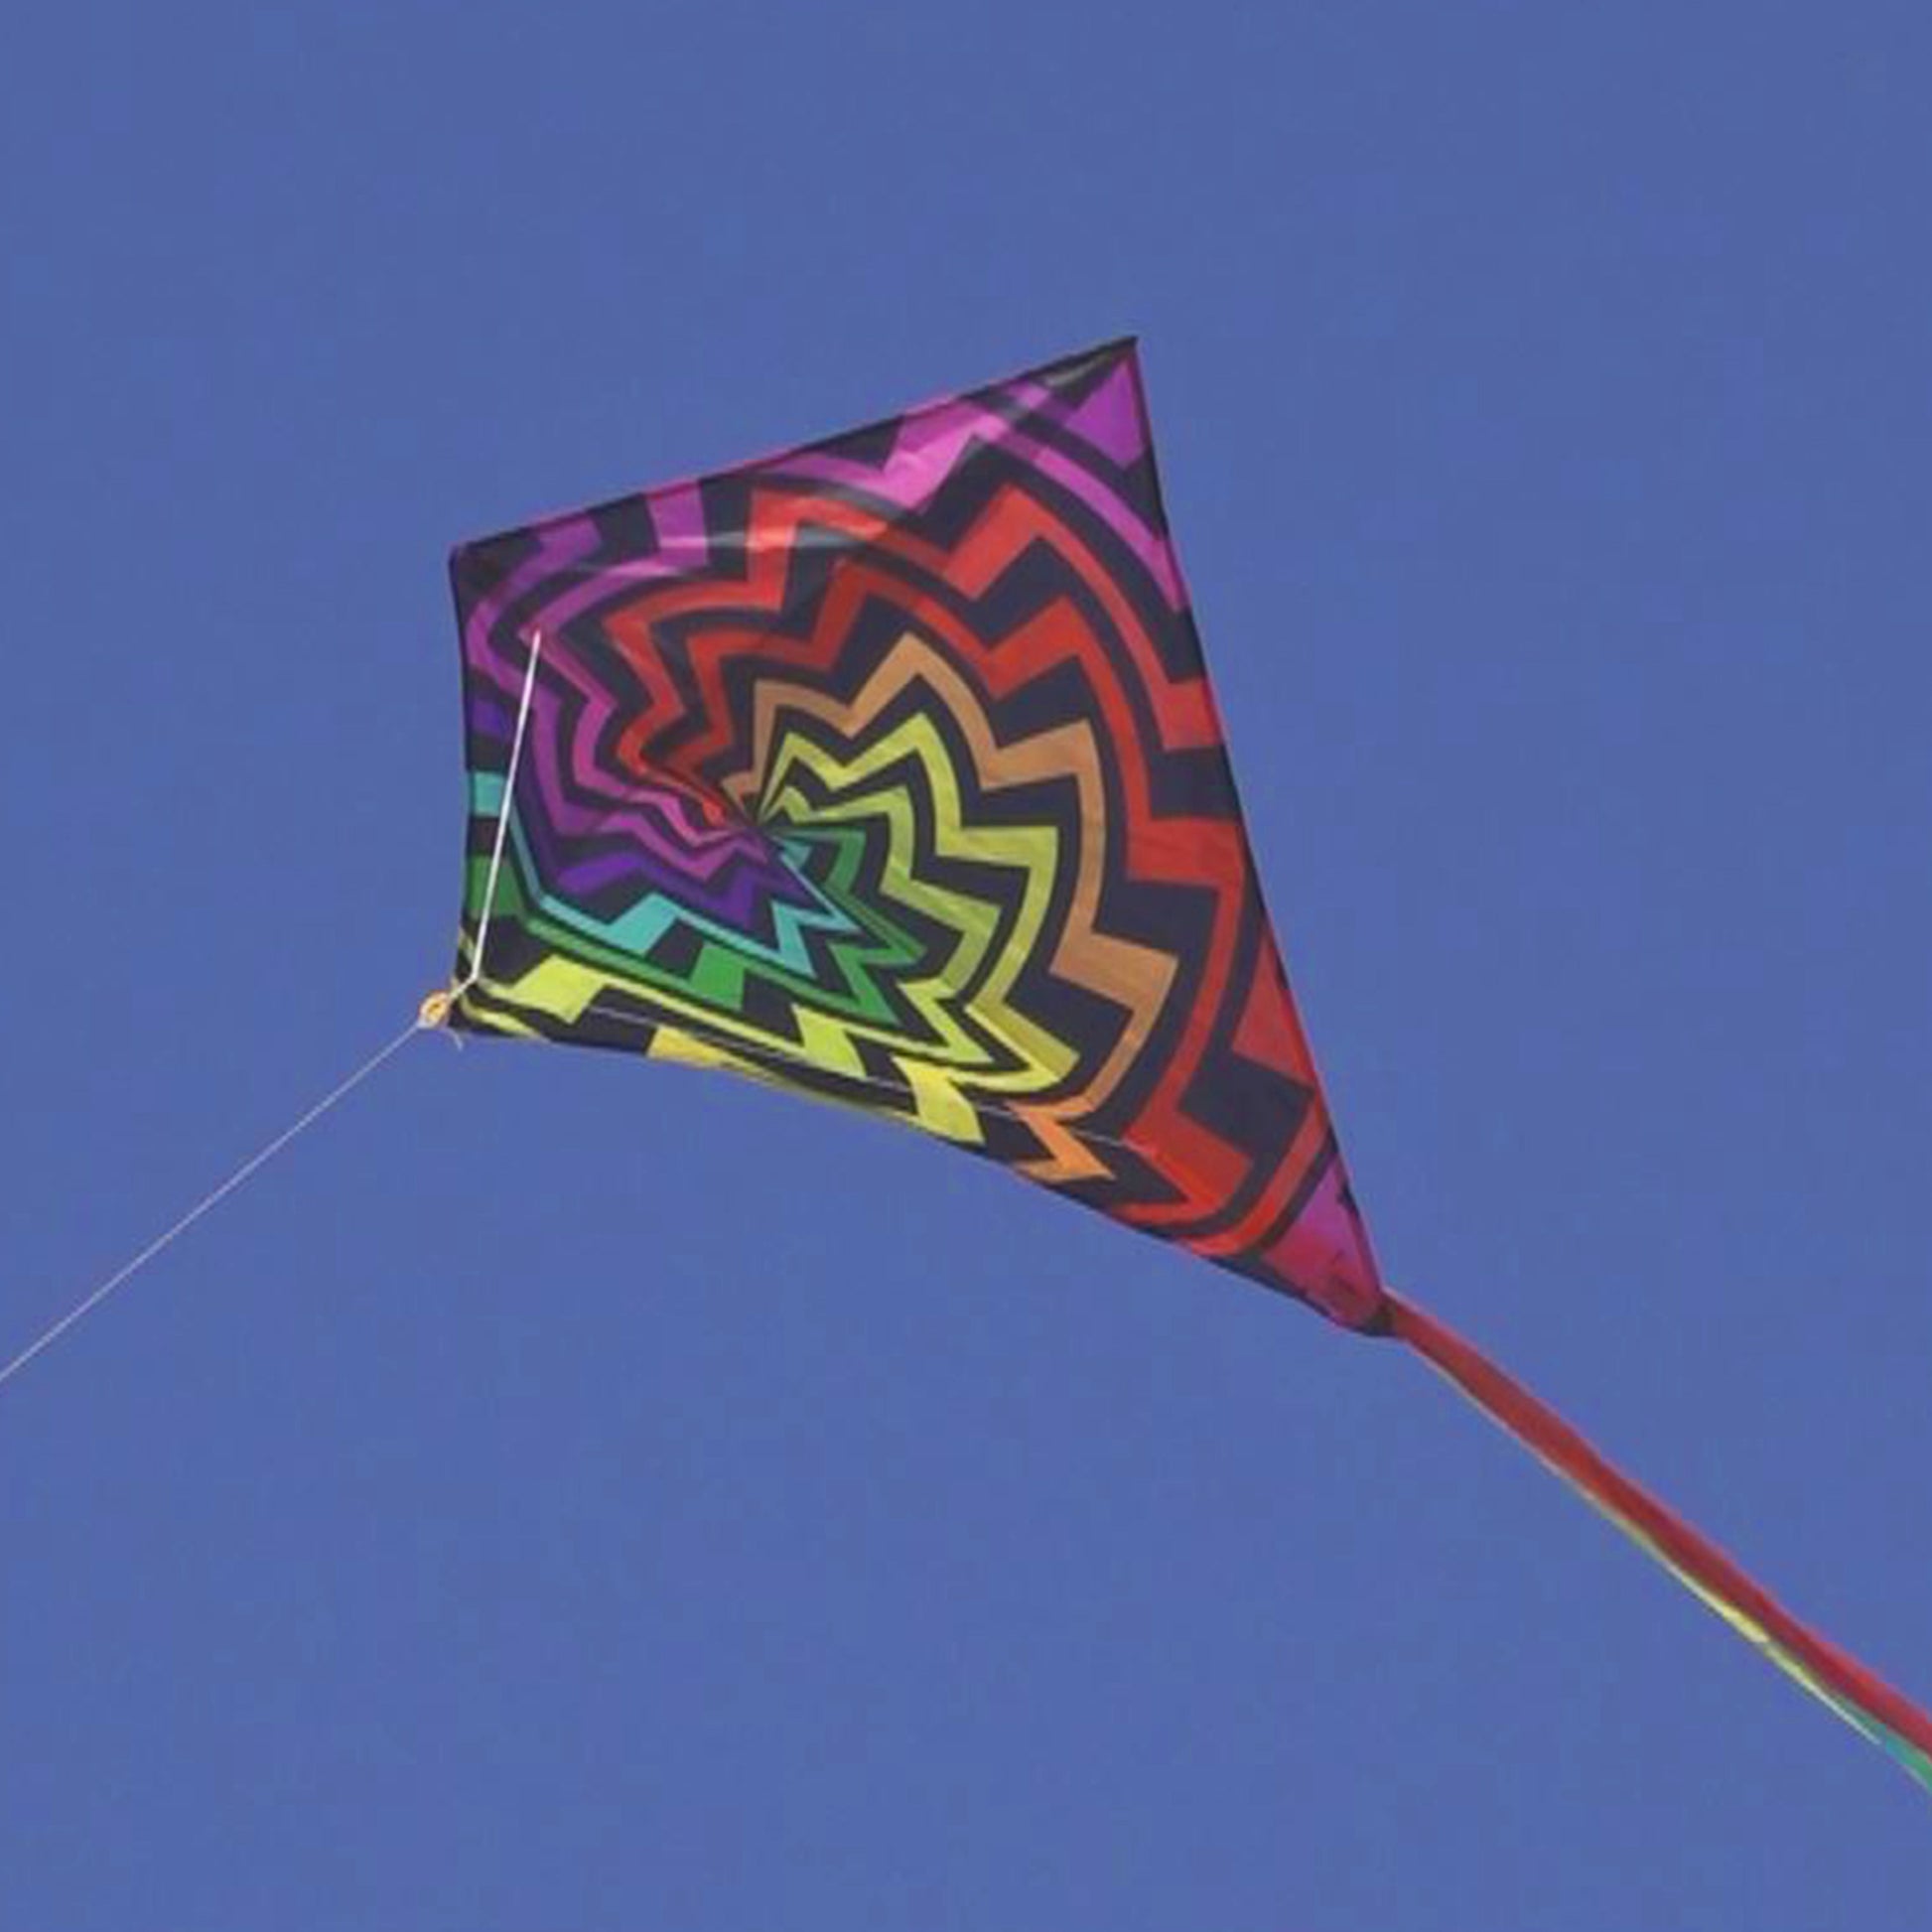 windnsun winddiamond spiral nylon kite flying